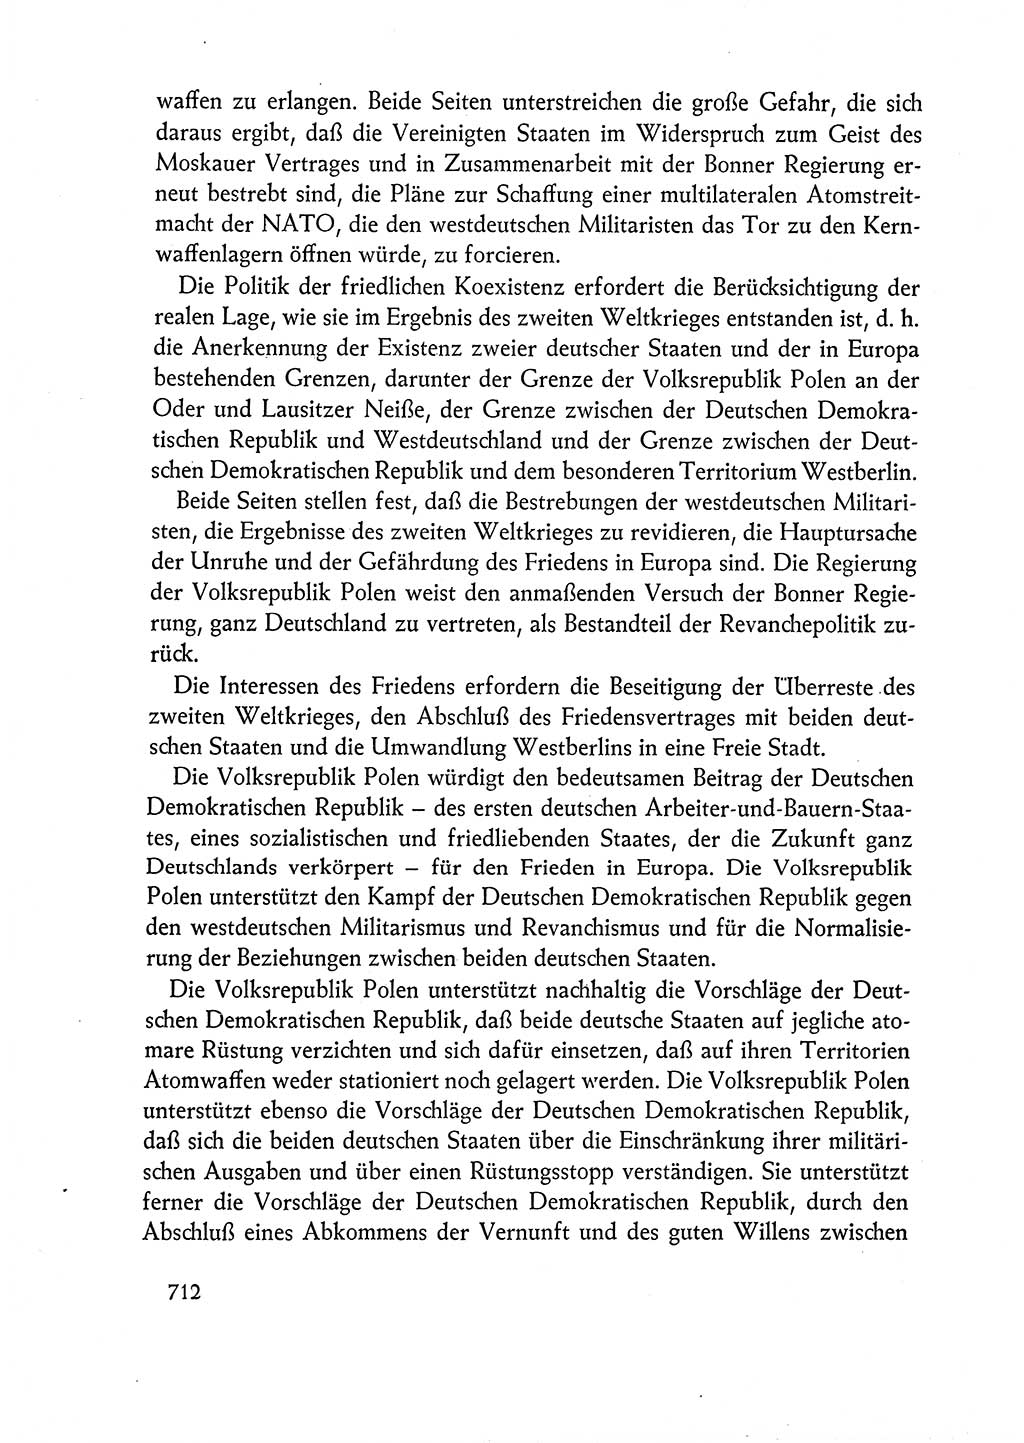 Dokumente der Sozialistischen Einheitspartei Deutschlands (SED) [Deutsche Demokratische Republik (DDR)] 1962-1963, Seite 712 (Dok. SED DDR 1962-1963, S. 712)